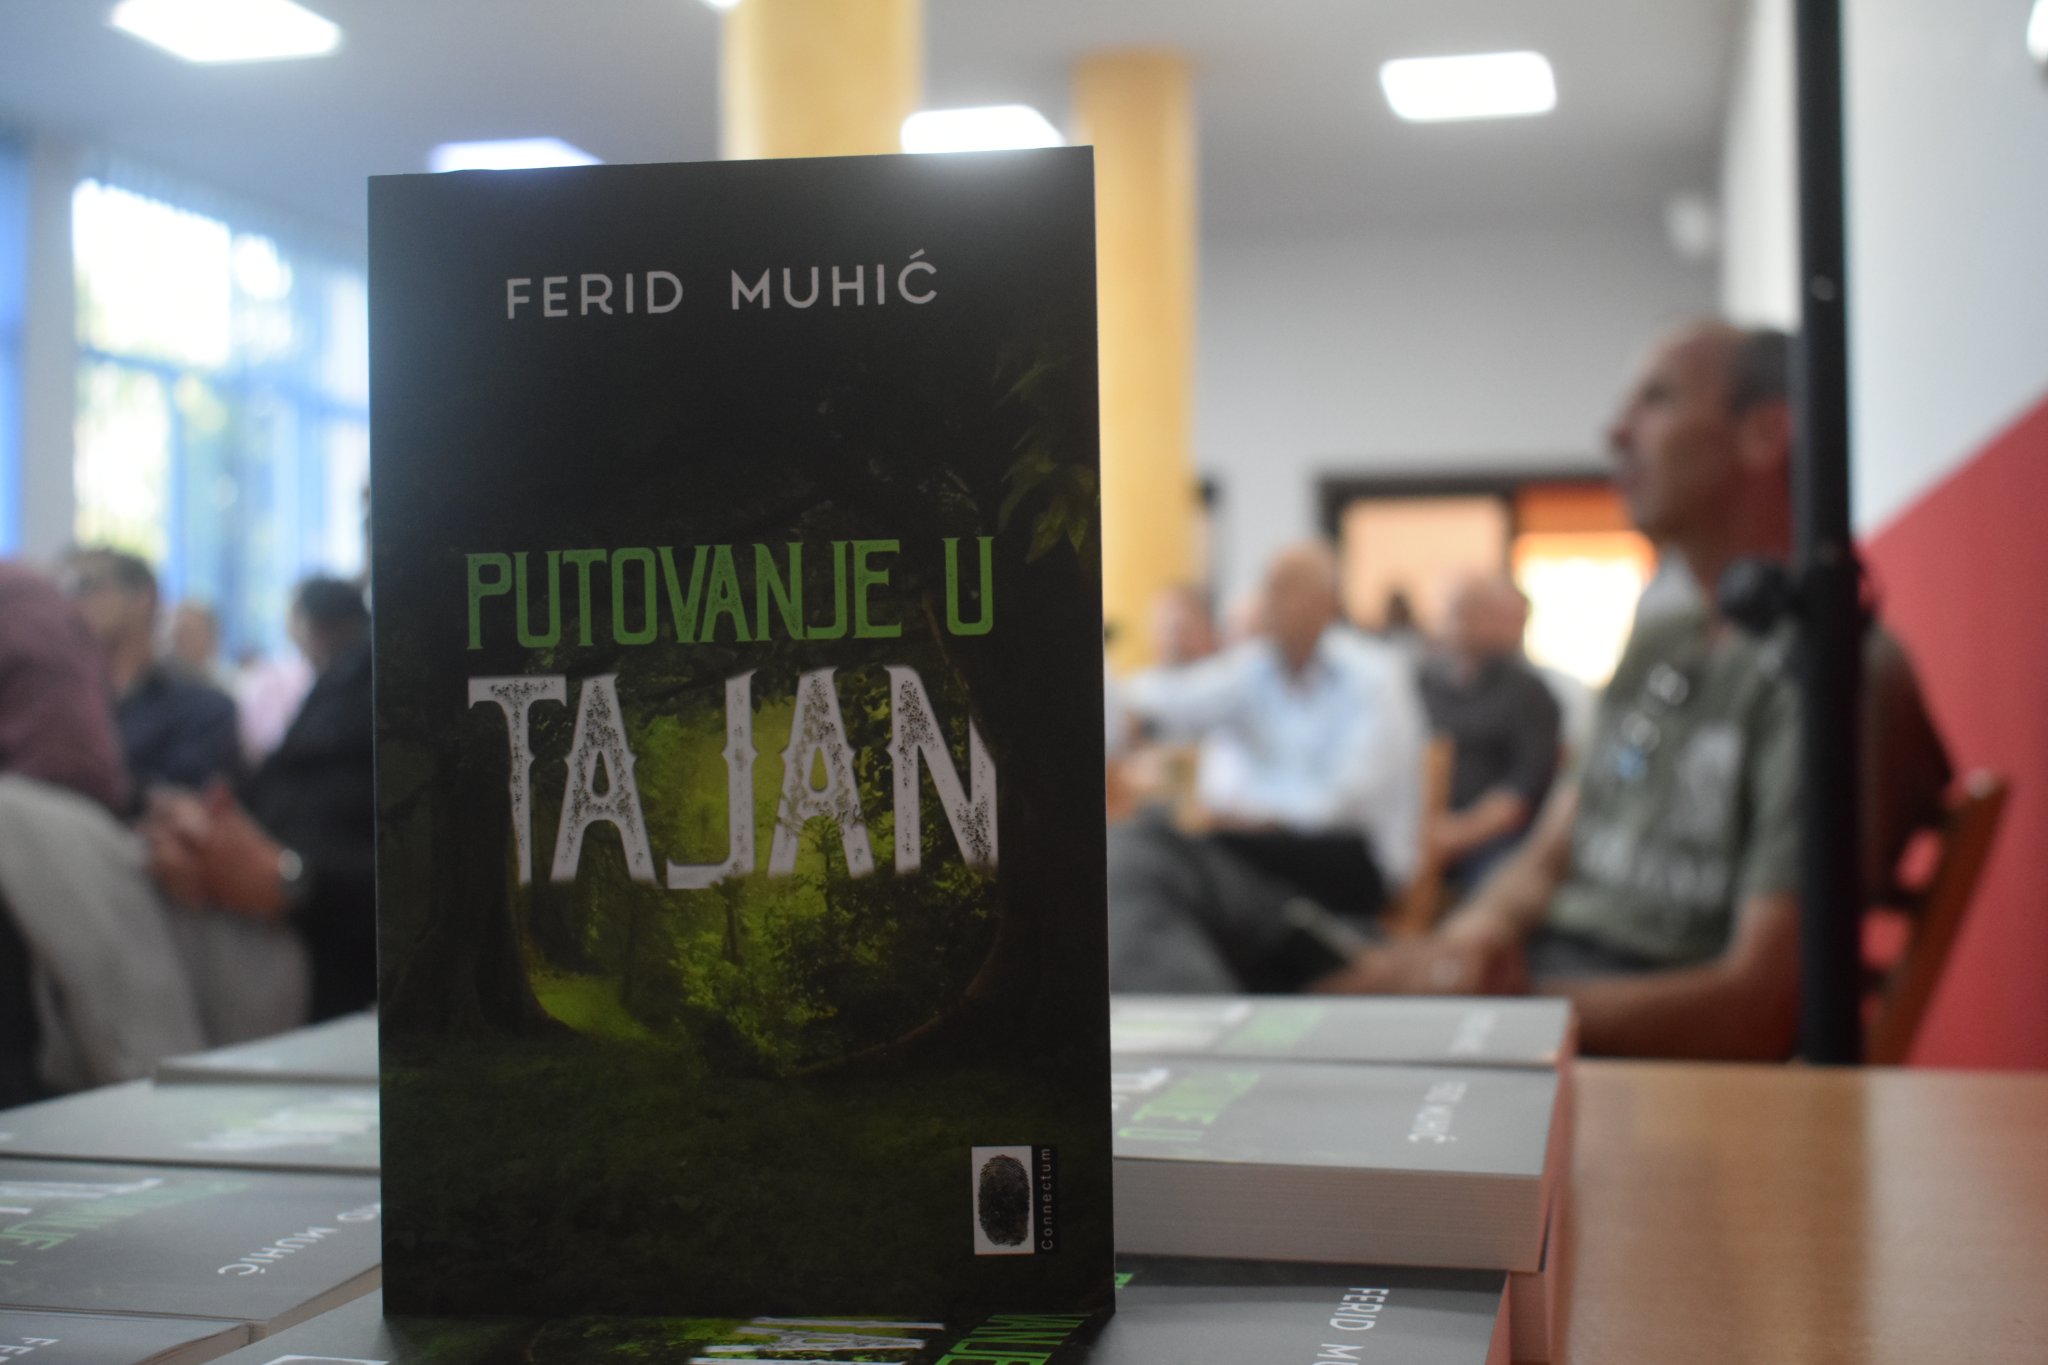 U Centru za kulturu predstavljena knjiga “Putovanje u Tajan” akademika Ferida Muhića